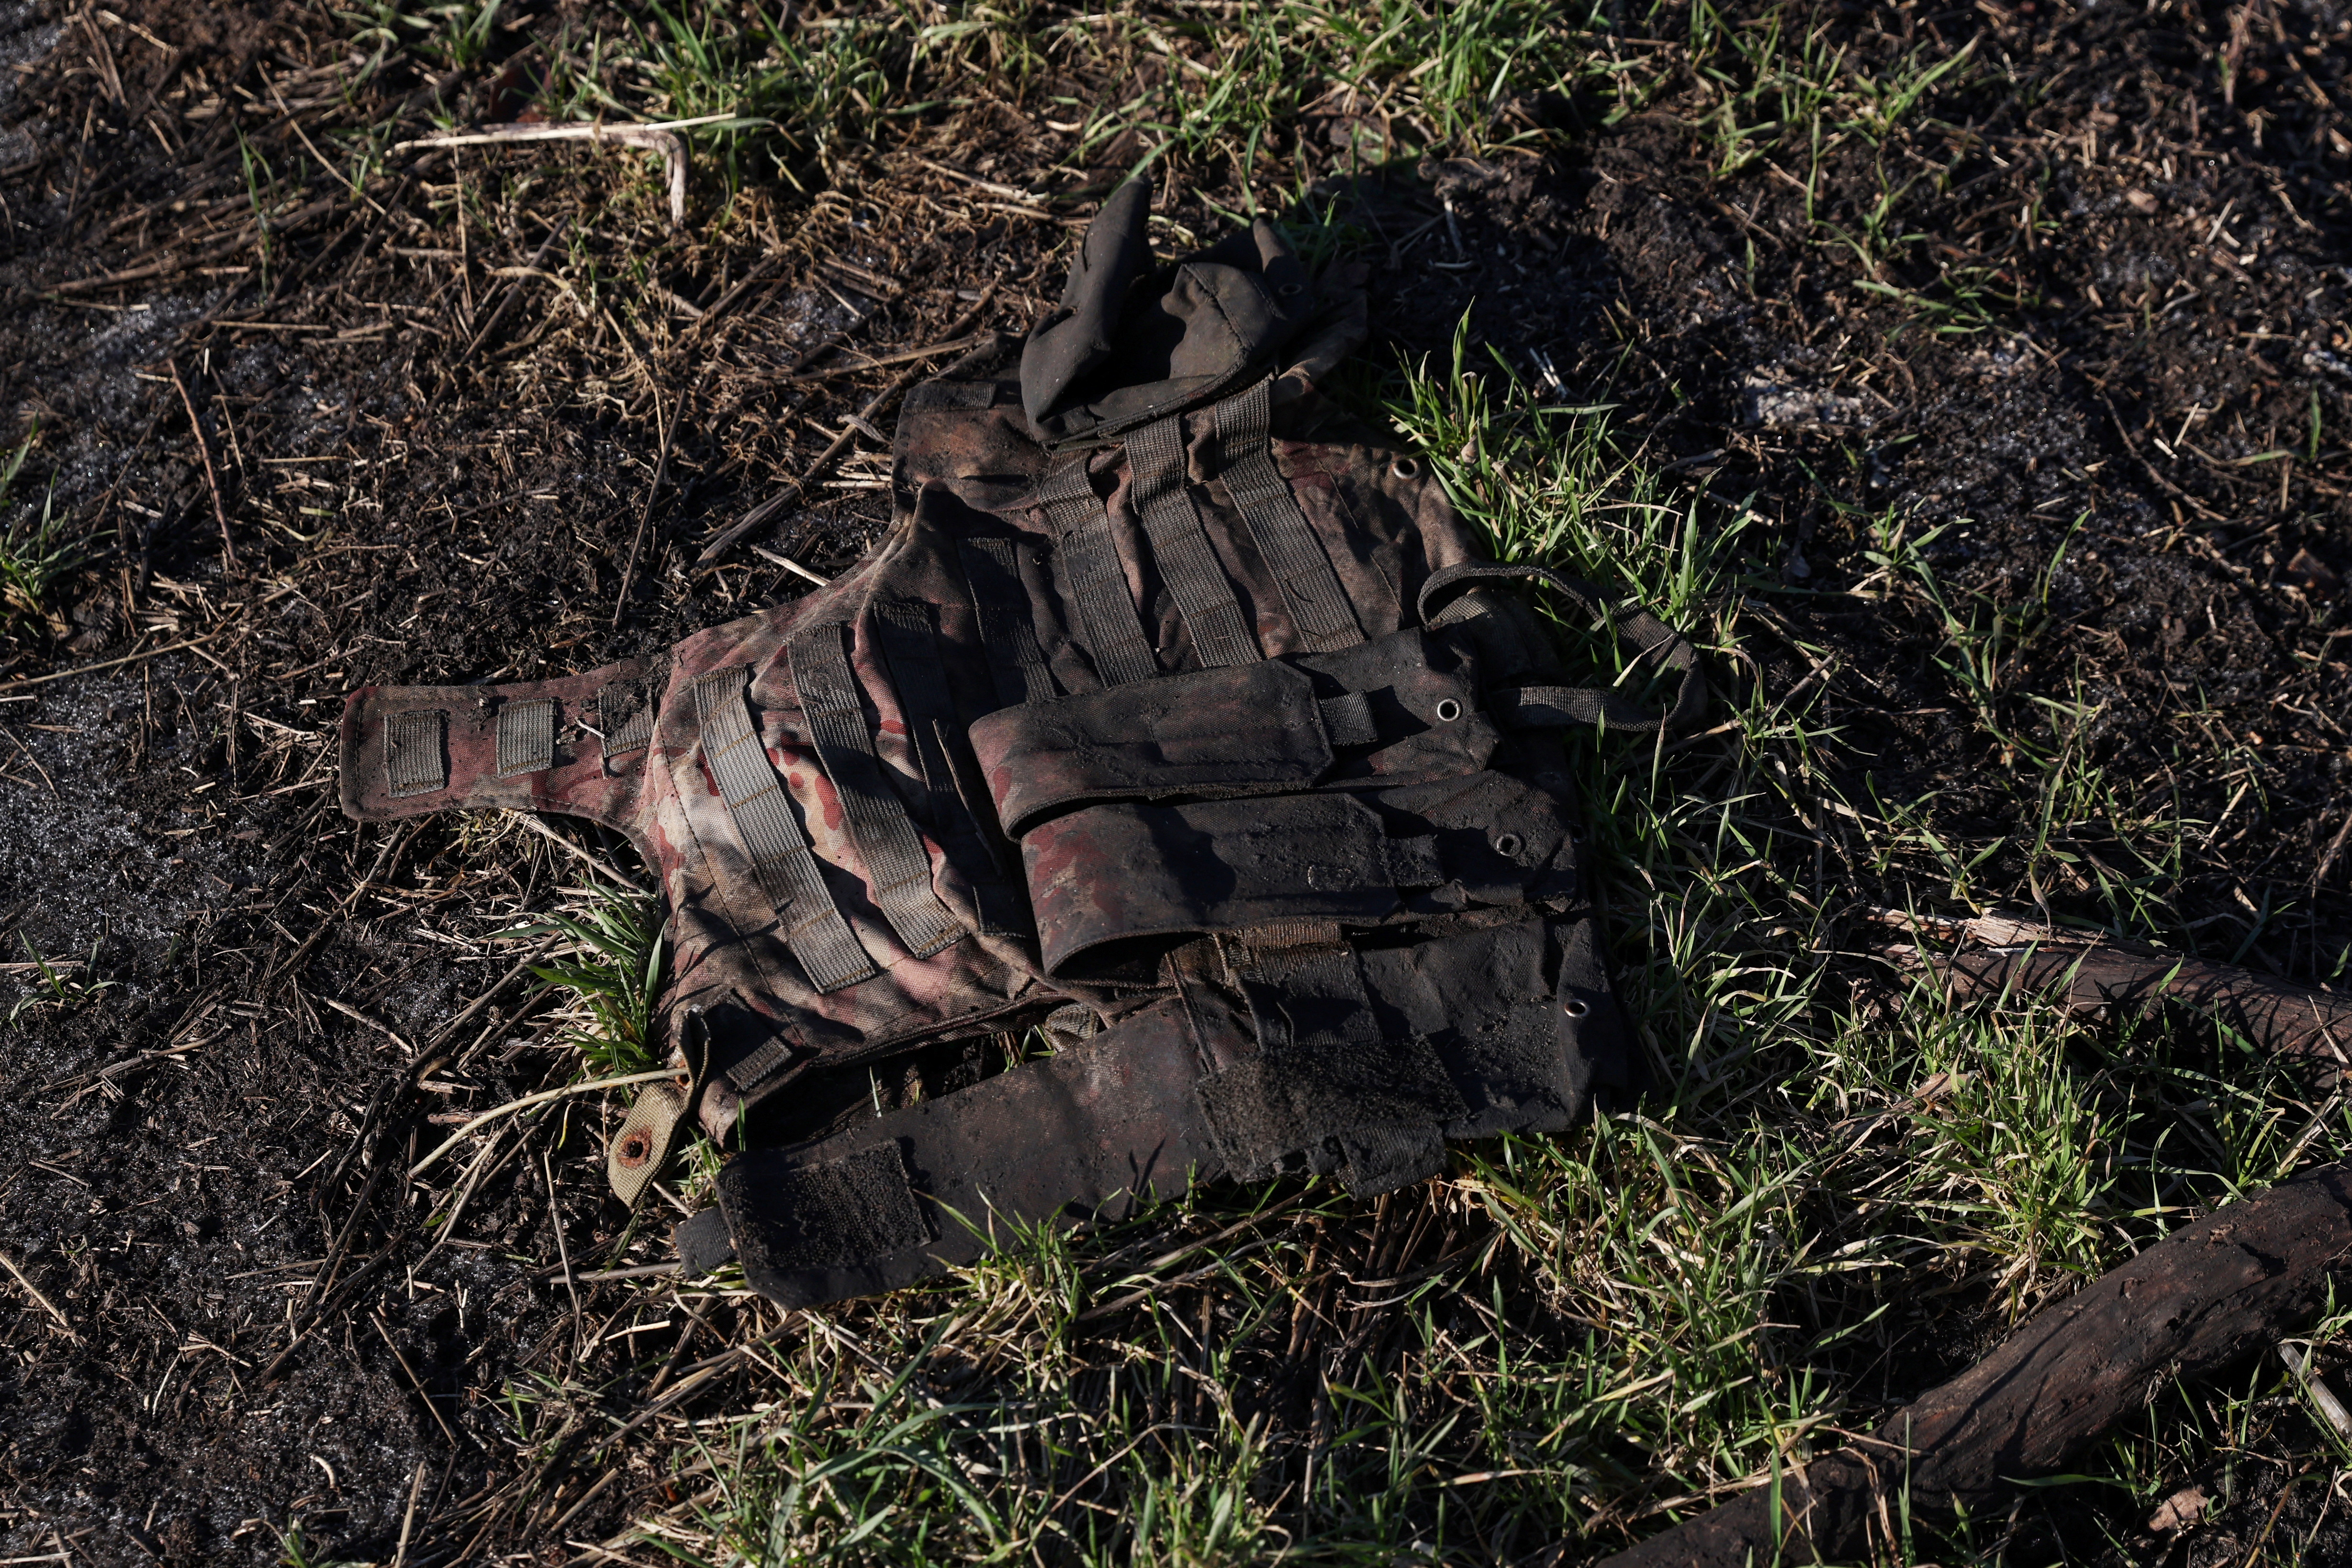 Un uniforme de un soldado ruso muerto yace en un campo minado, mientras continúa el ataque de Rusia contra Ucrania, durante la reunión de soldados rusos muertos que quedan para ser intercambiados por soldados ucranianos caídos en campos minados en la parte norte de la región de Donetsk de Ucrania. REUTERS/Shannon Stapleton
